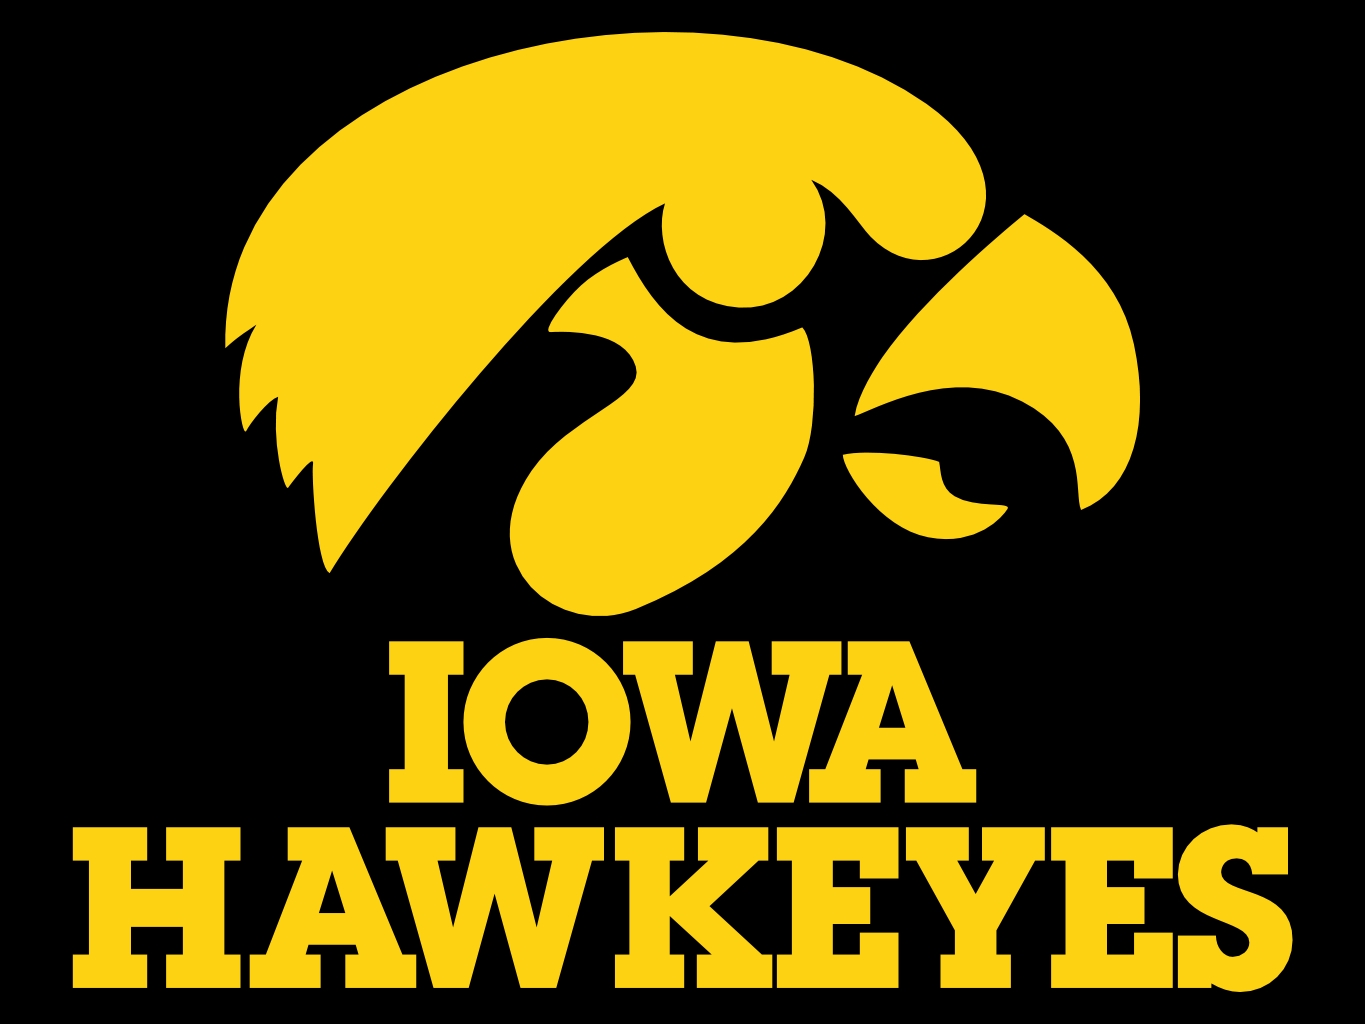 Iowa Hawkeye Emblem Image